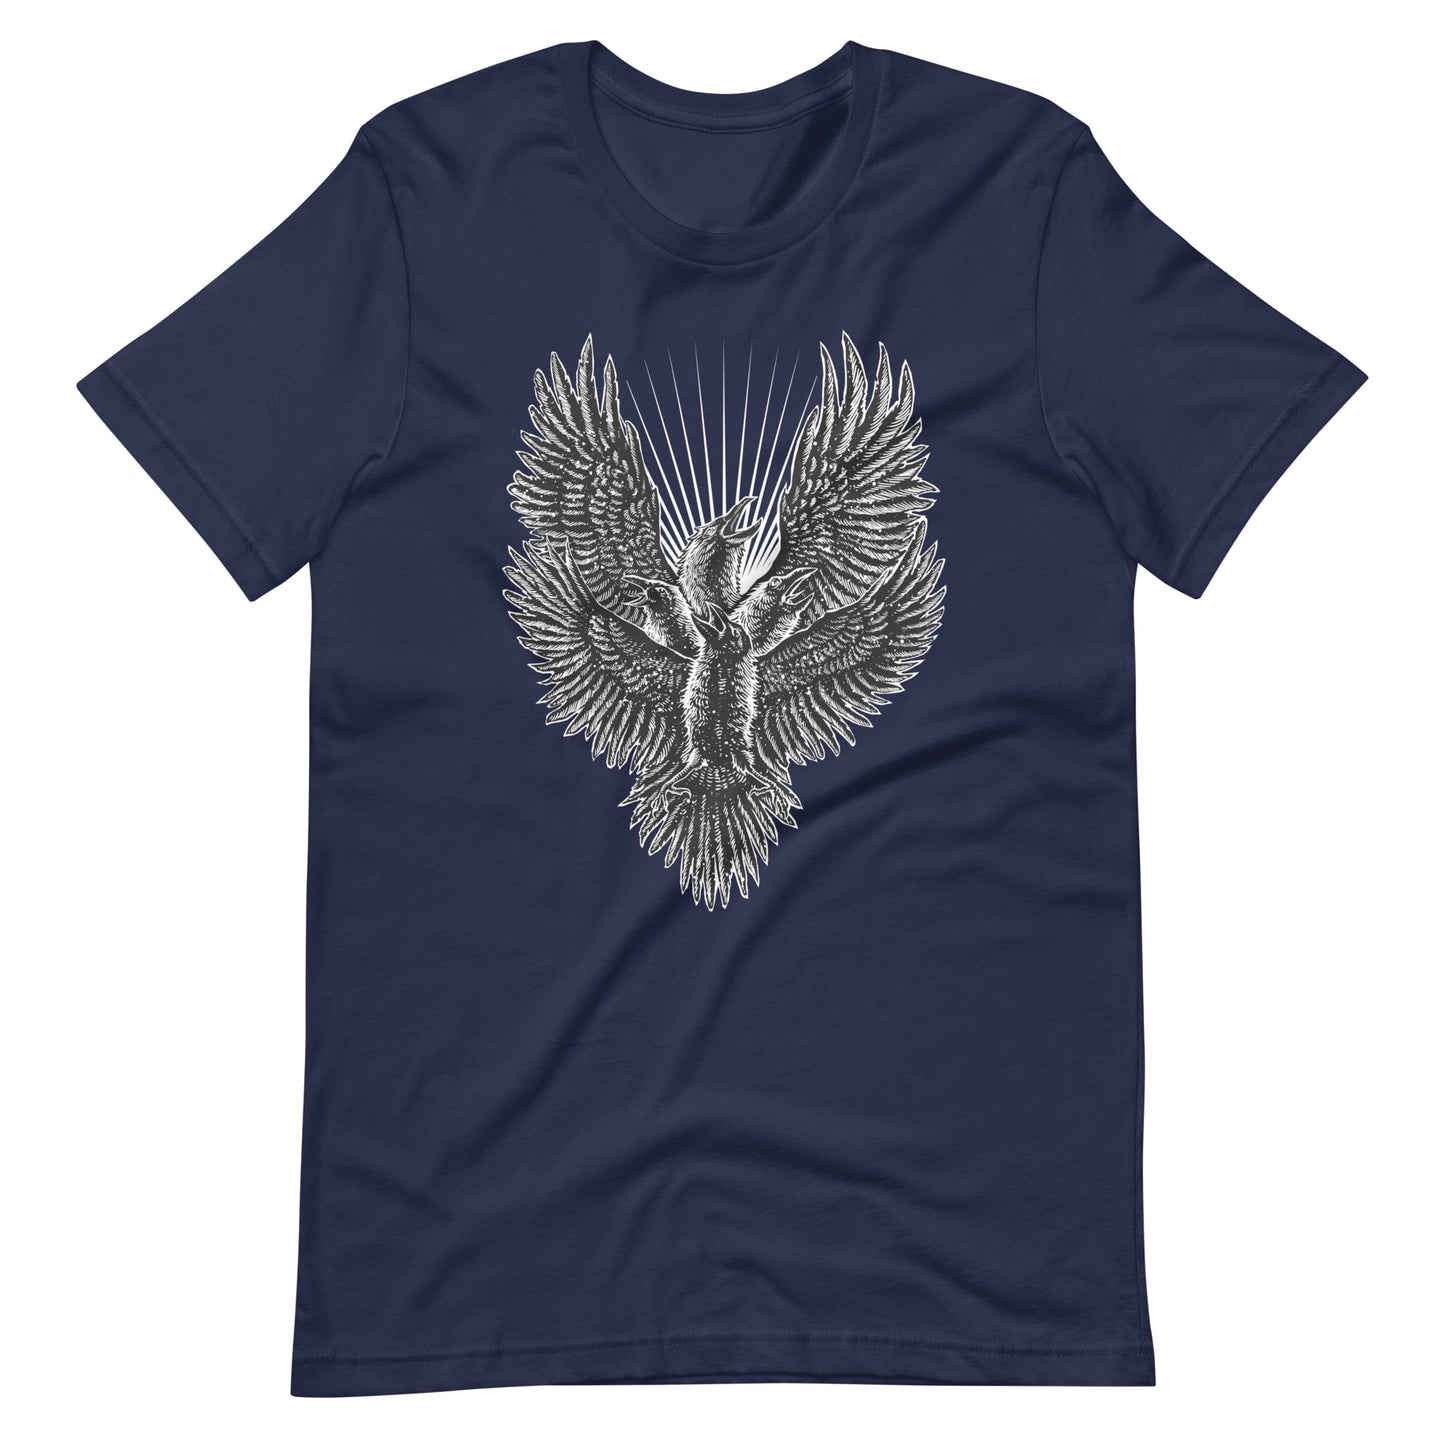 Luminous Crow - Men's t-shirt - Navy Front